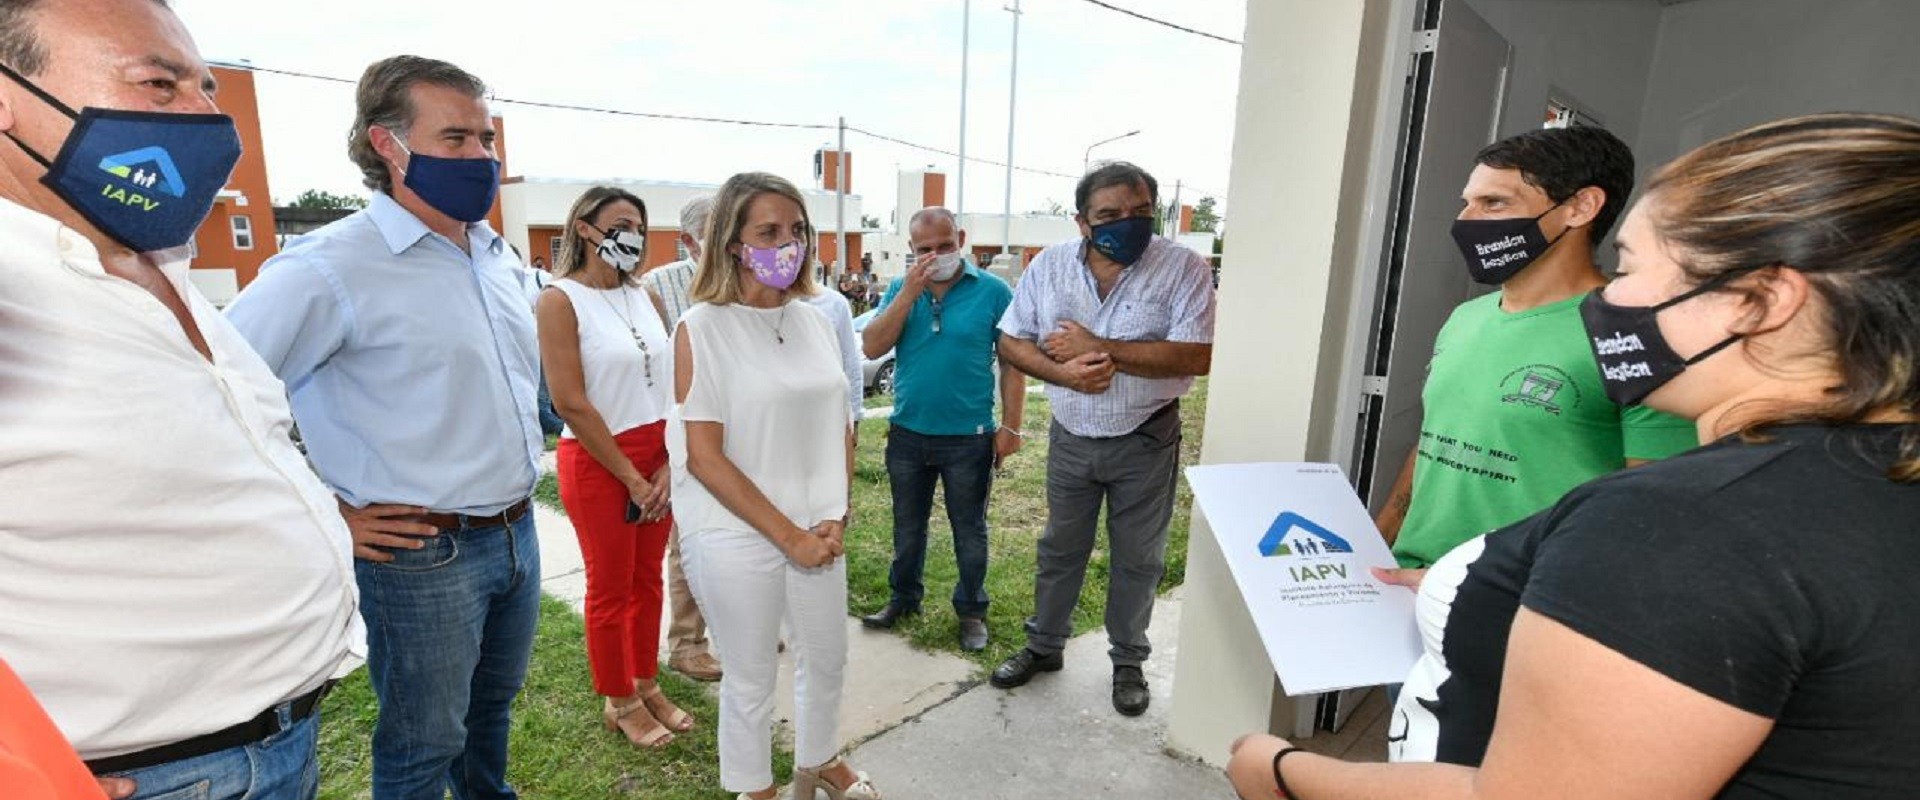 La vicegobernadora Stratta entregó viviendas y aportes en Gualeguaychú junto al intendente Piaggio